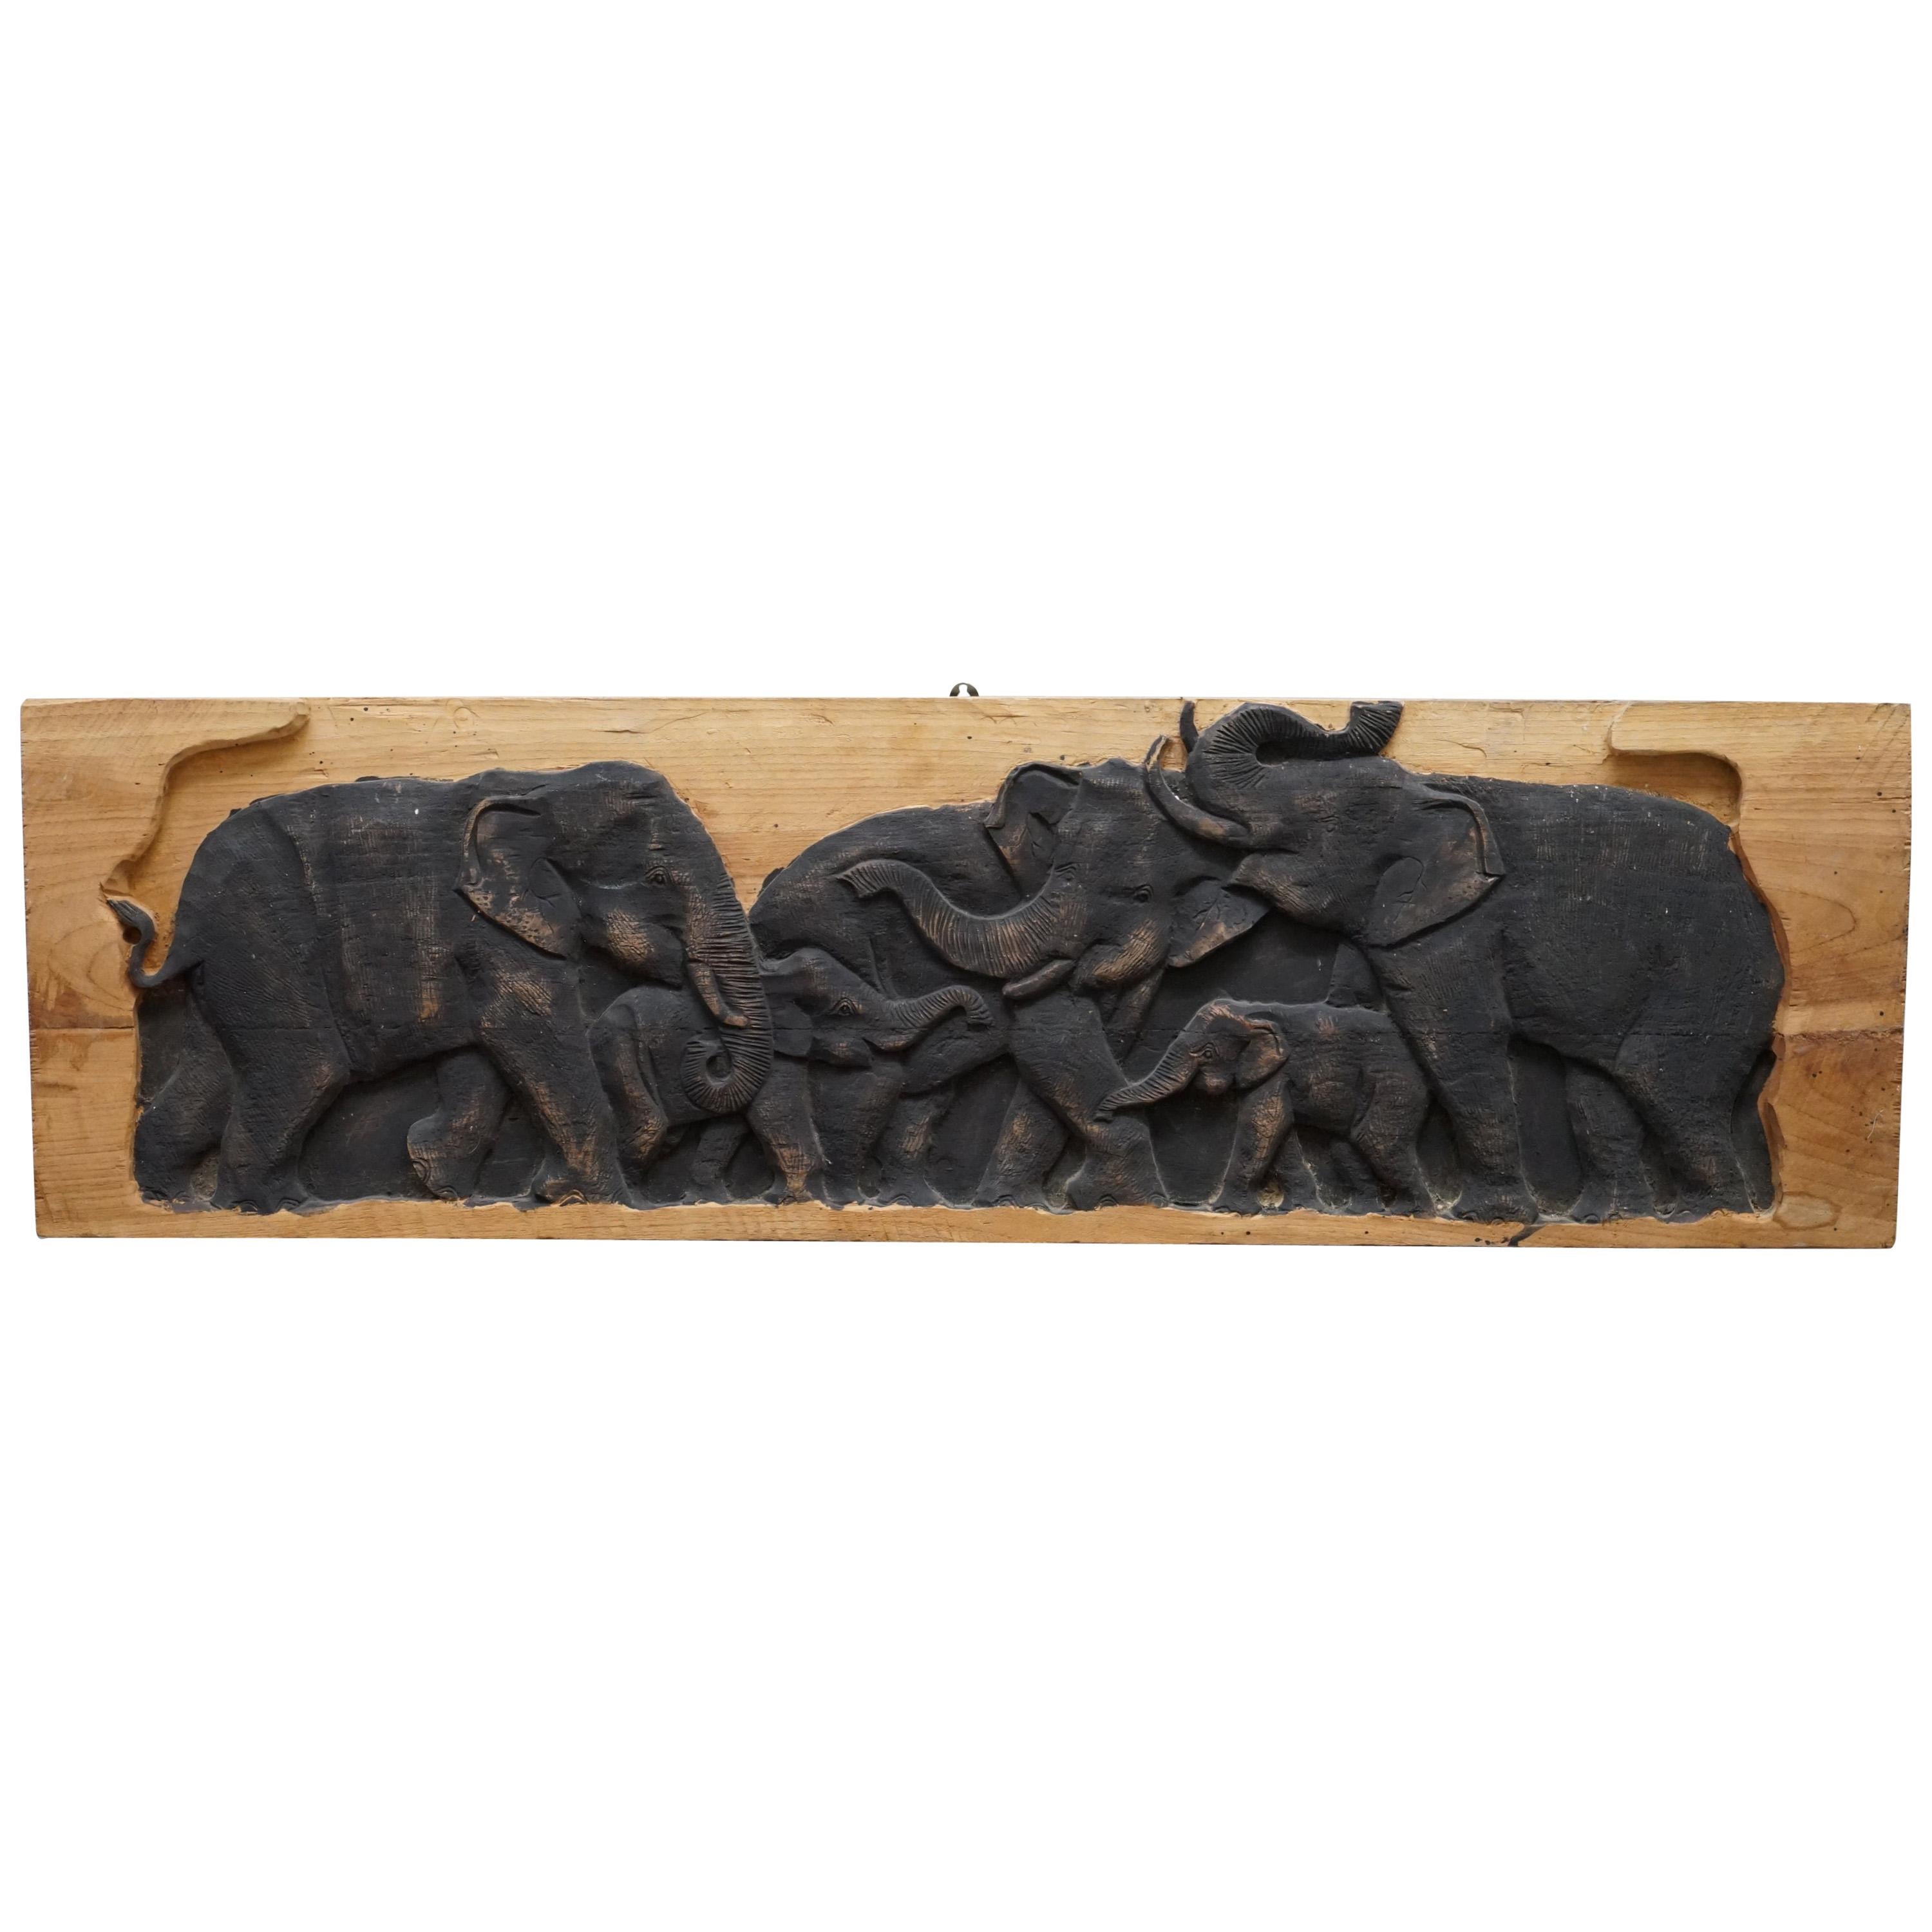 Ravissant présentoir vintage en bois sculpté représentant un troupeau d'éléphants, vers les années 1960